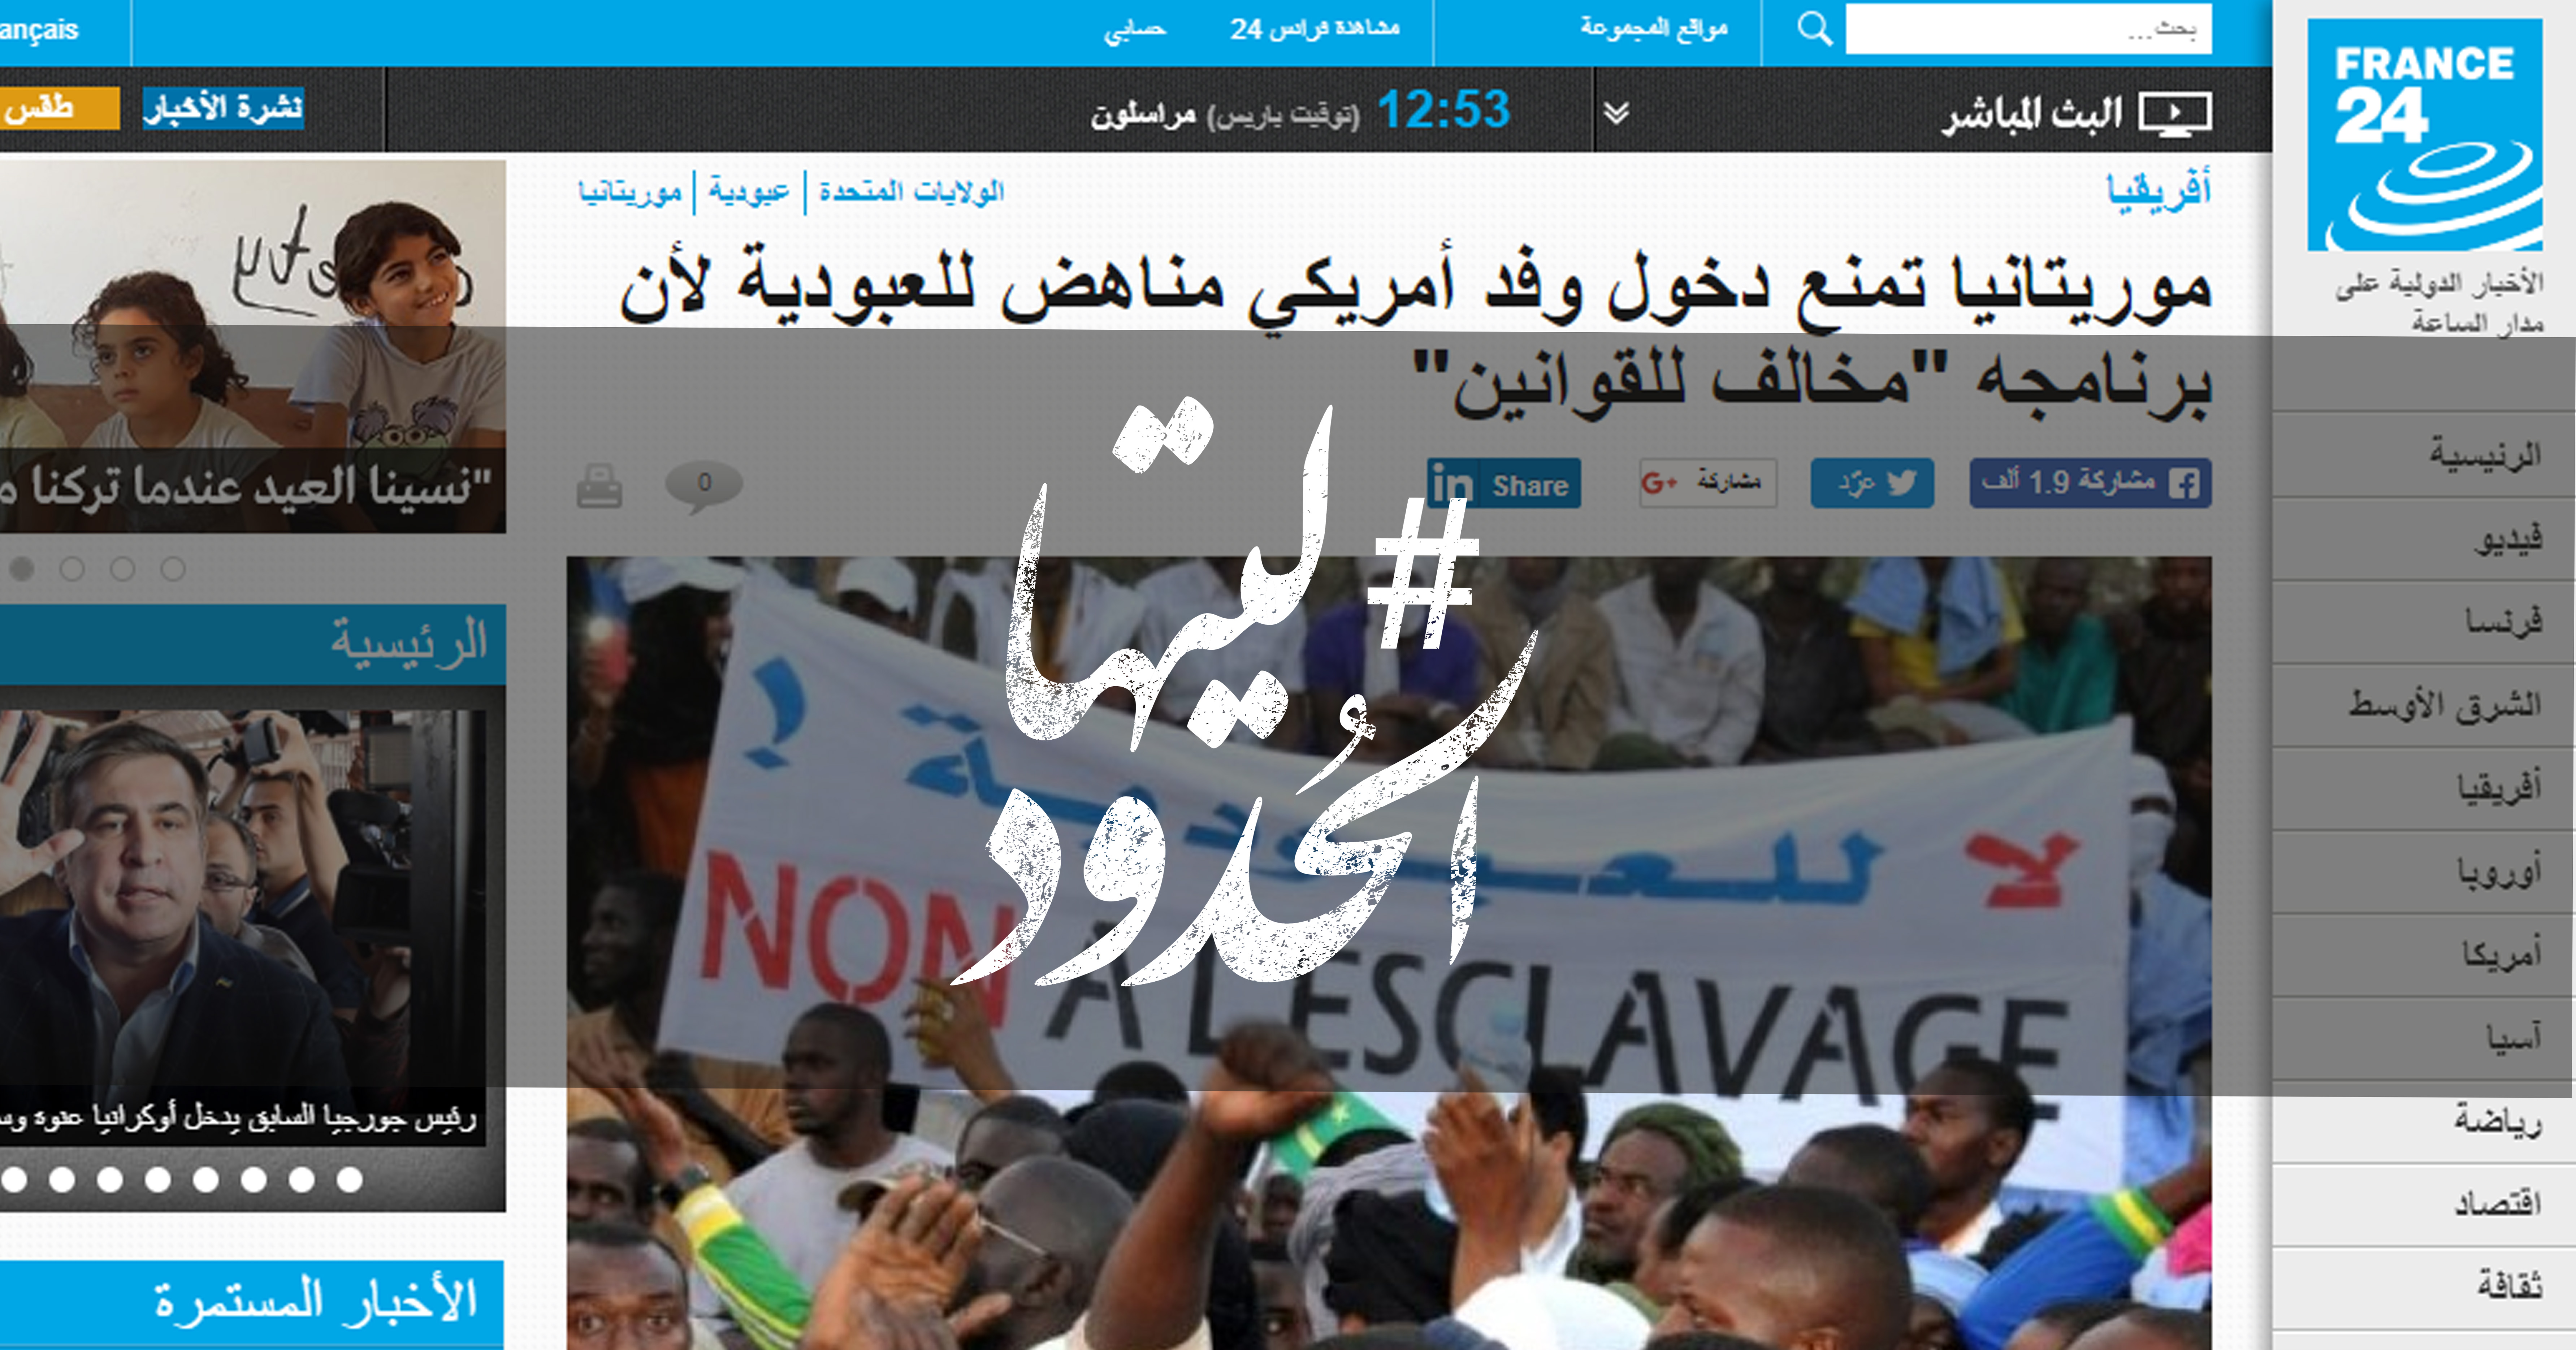 صورة موريتانيا تمنع دخول وفد أمريكي مناهض للعبودية لأن برنامجه “مخالف للقوانين”